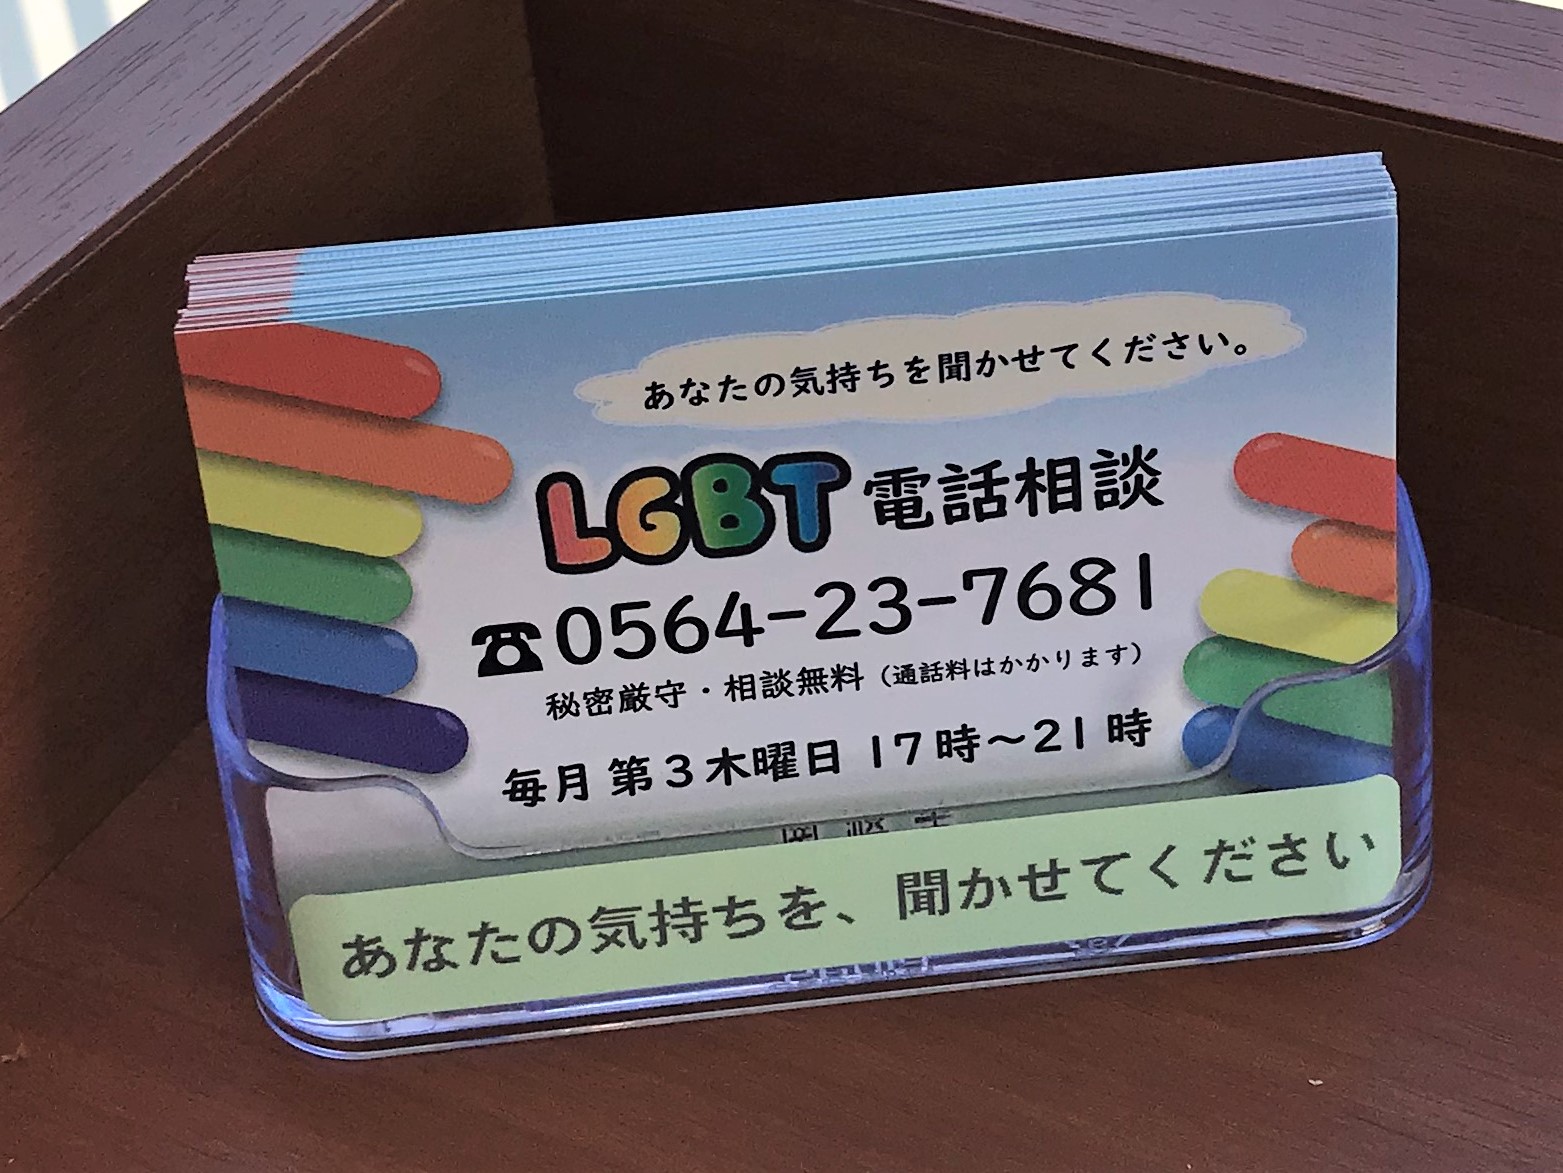 岡崎市LGBT電話相談の案内カード